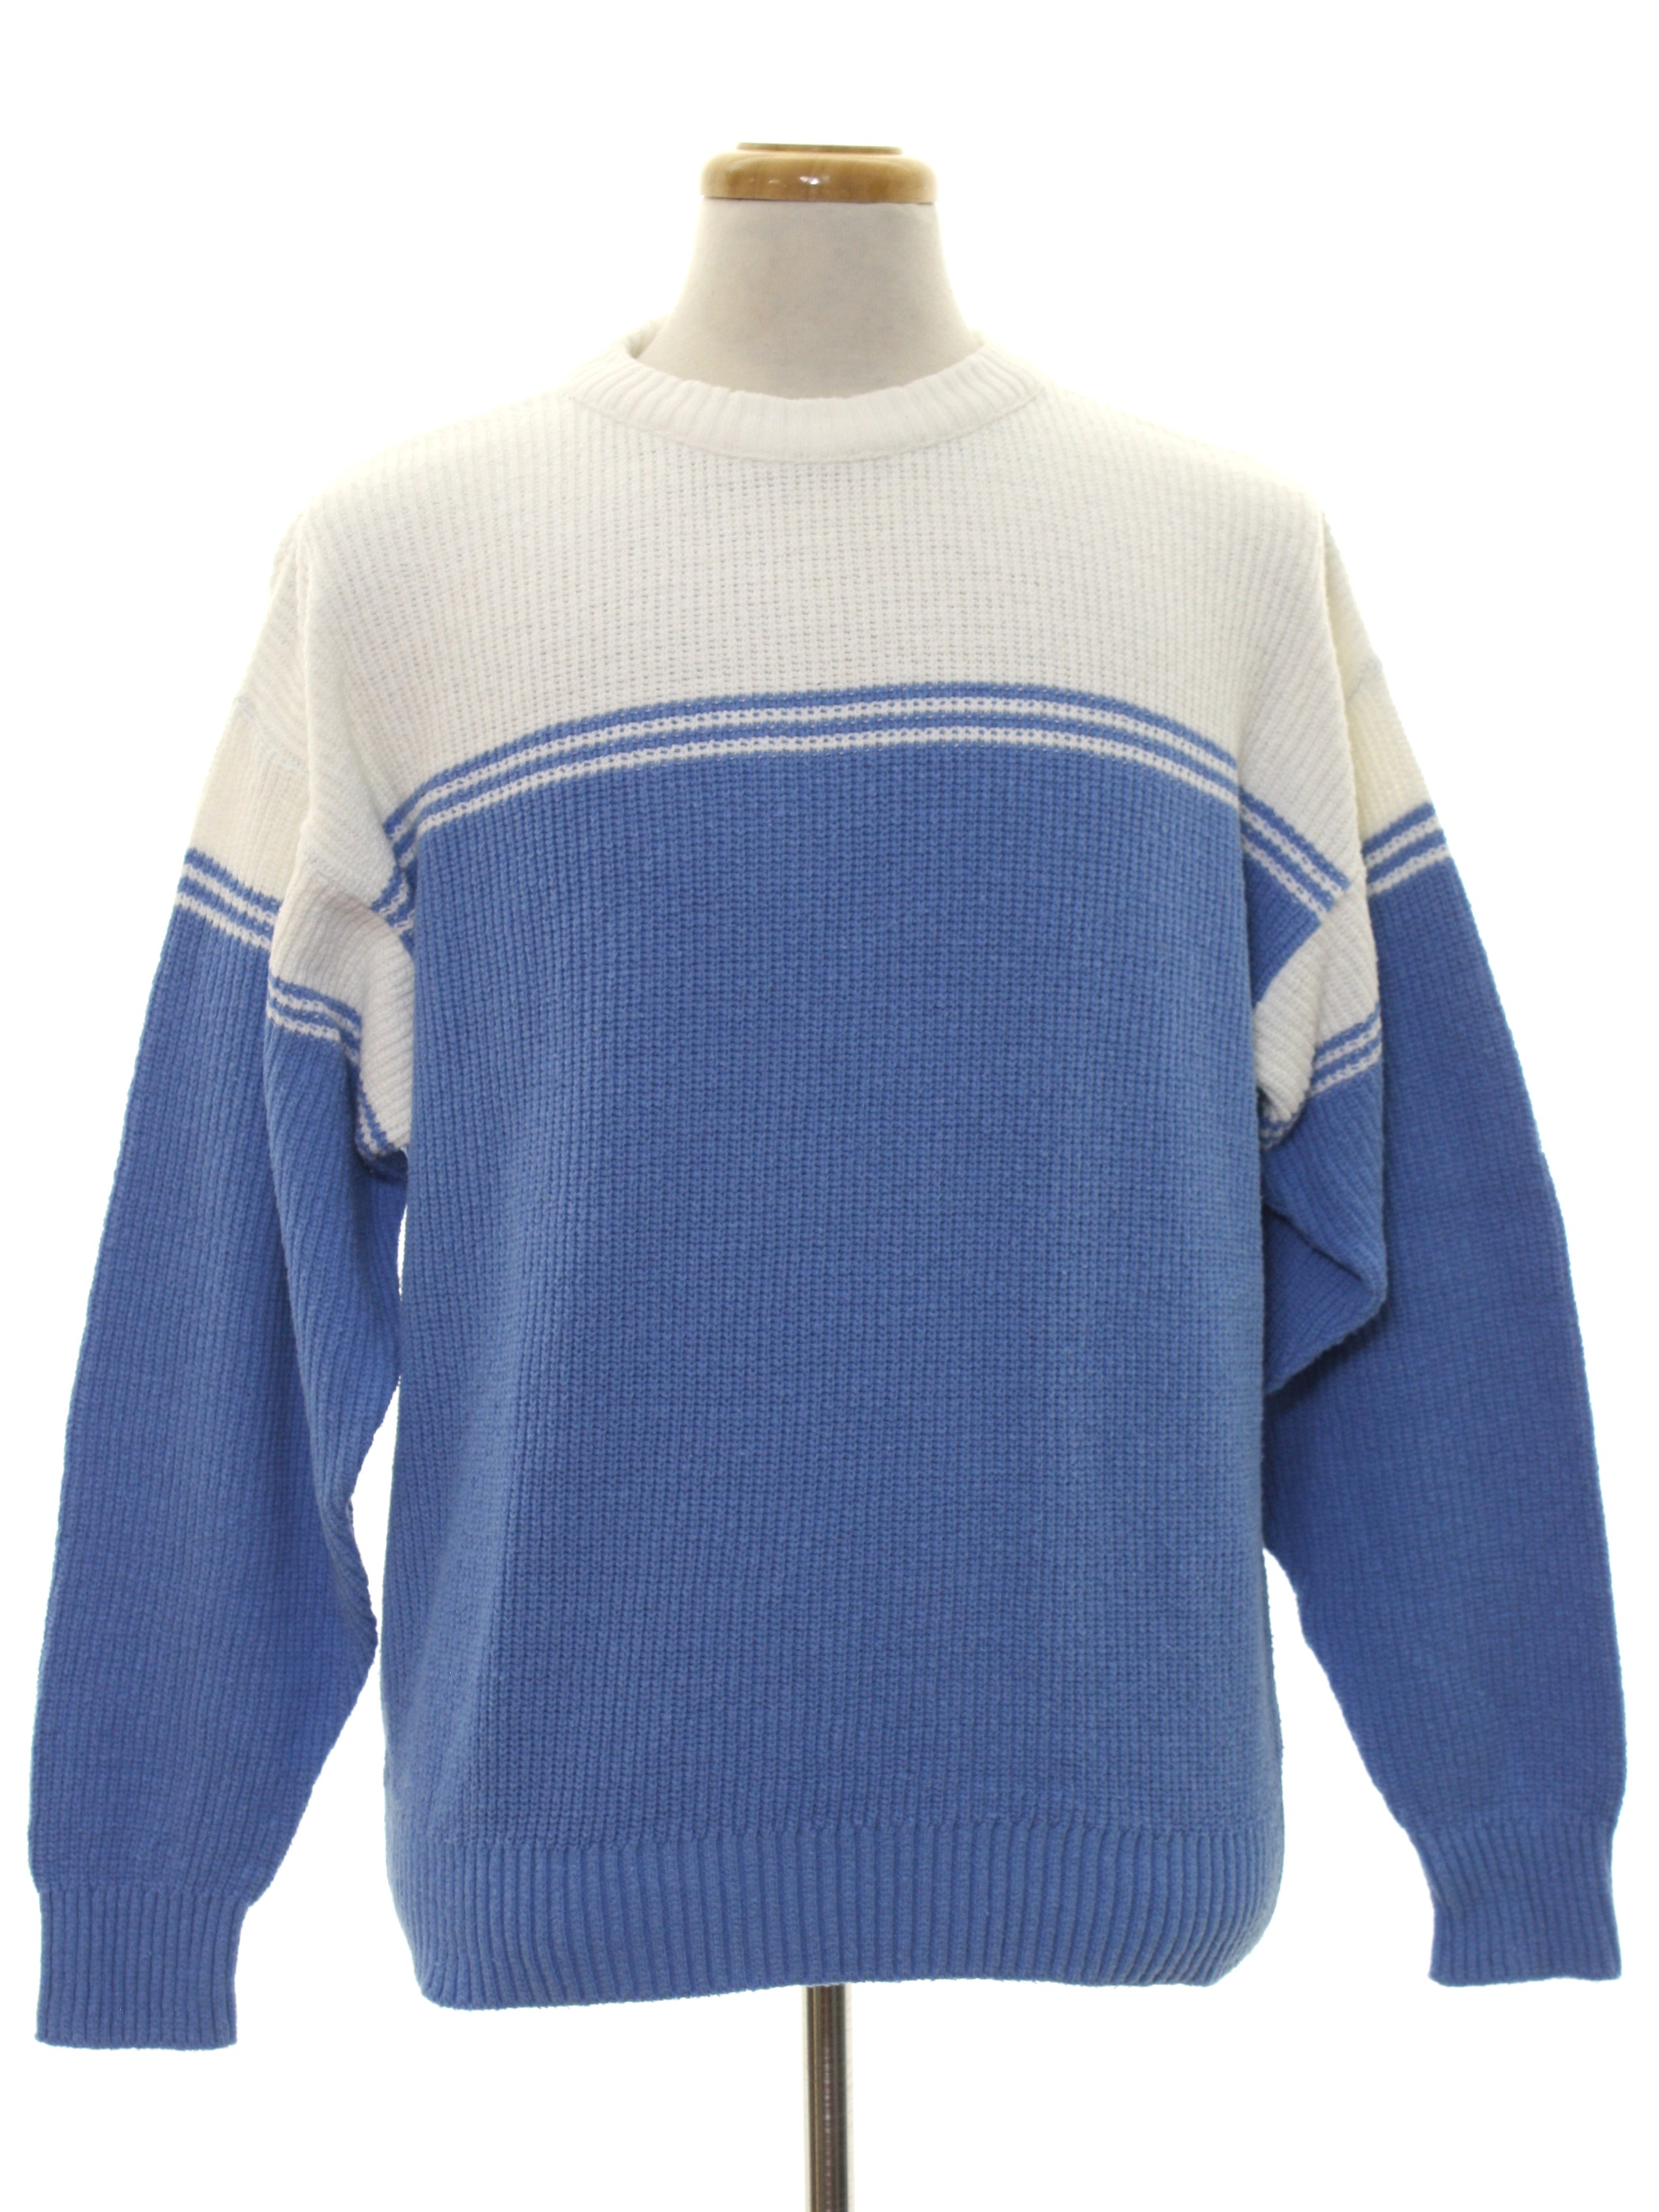 1980's Sweater (London Fog): 80s -London Fog- Mens sky blue and white ...